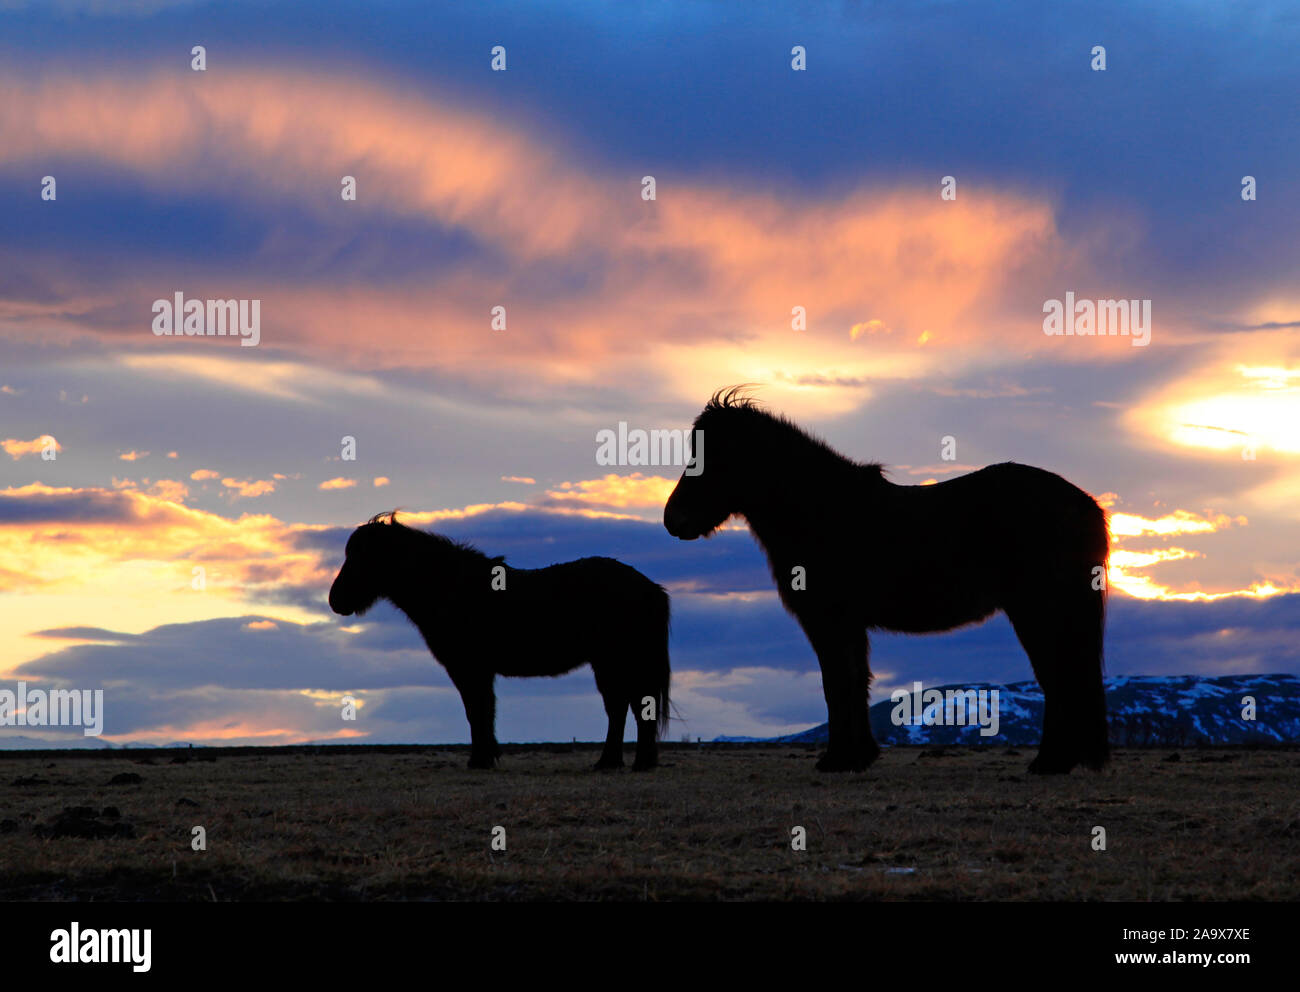 Europa, Island, Pferde im Gegenlicht Stock Photo